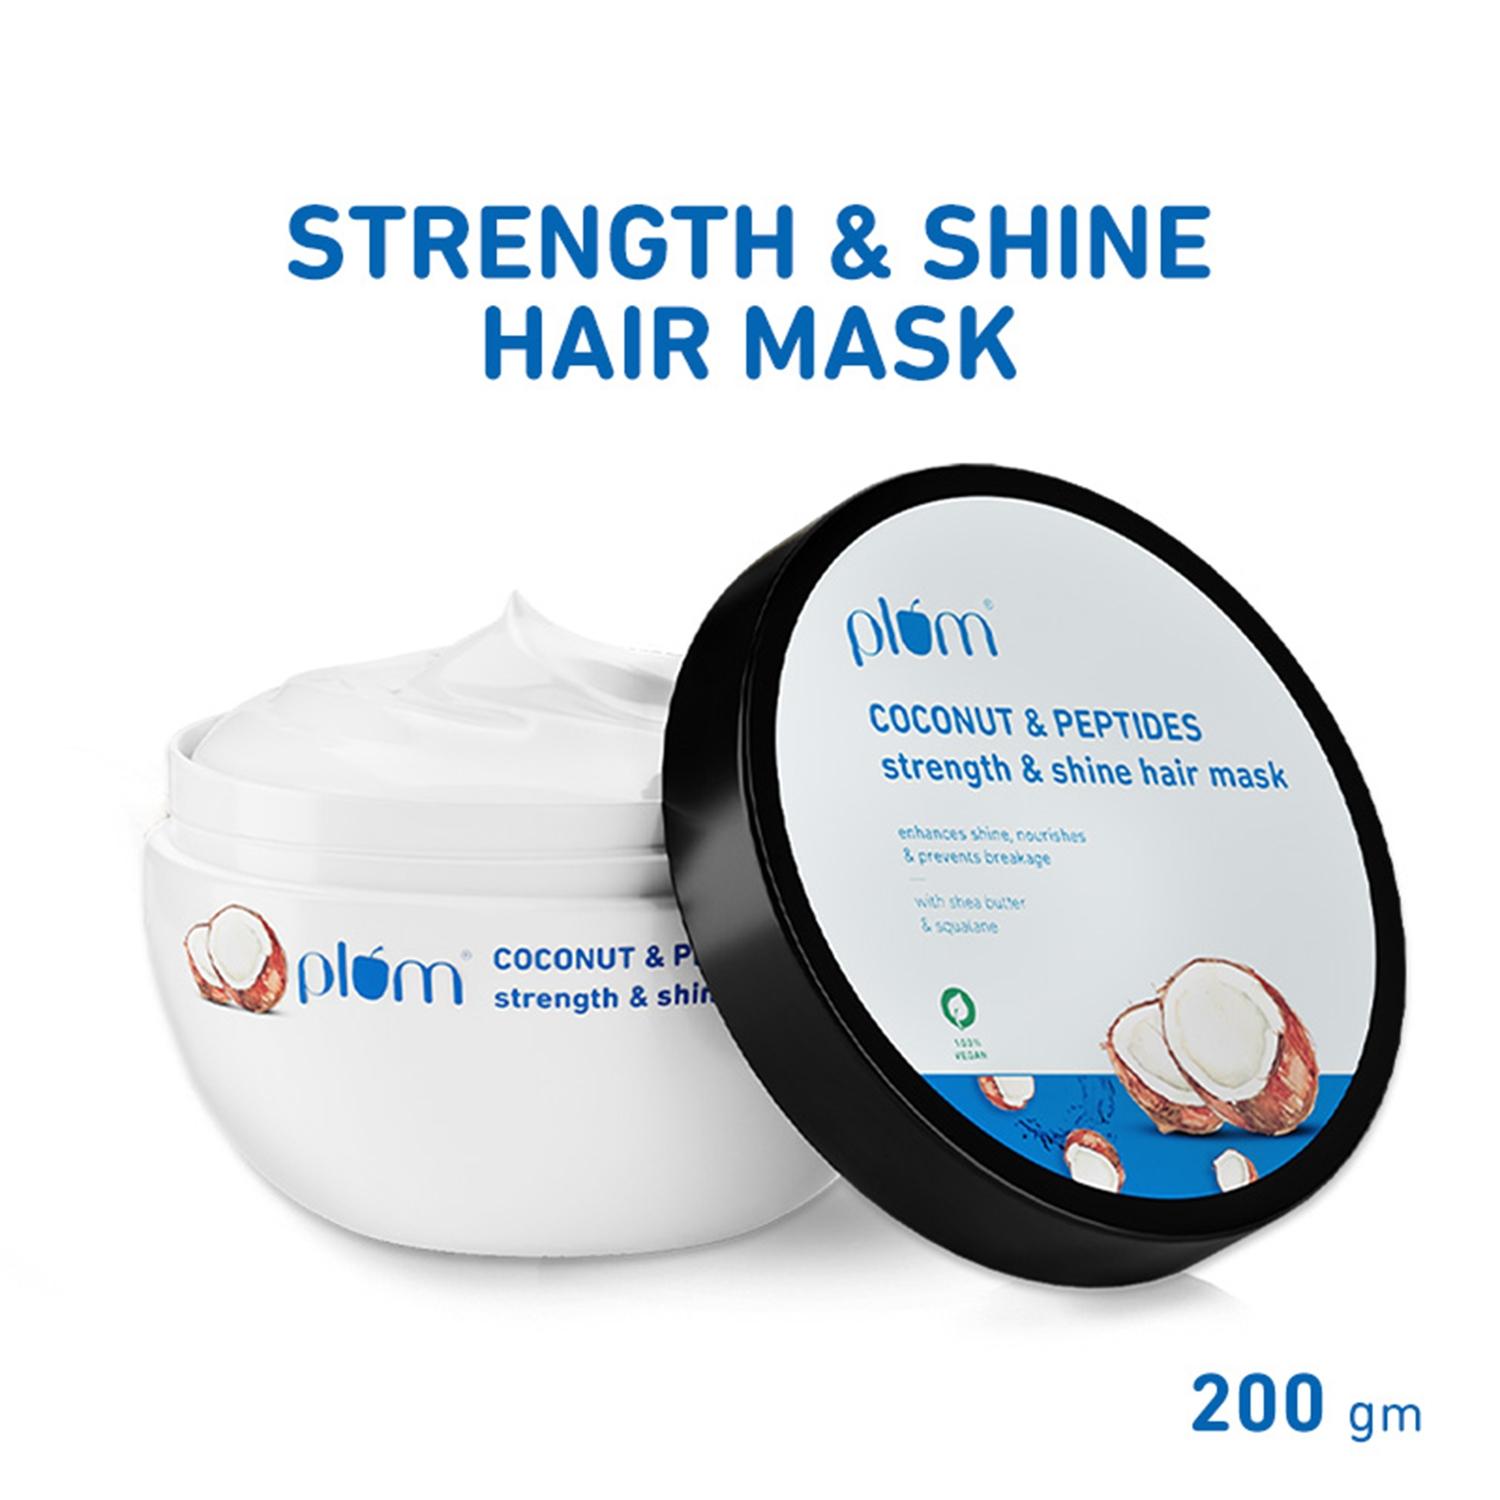 plum coconut & peptides strength & shine hair mask for dull & dry hair, restore hair moisture(200g)